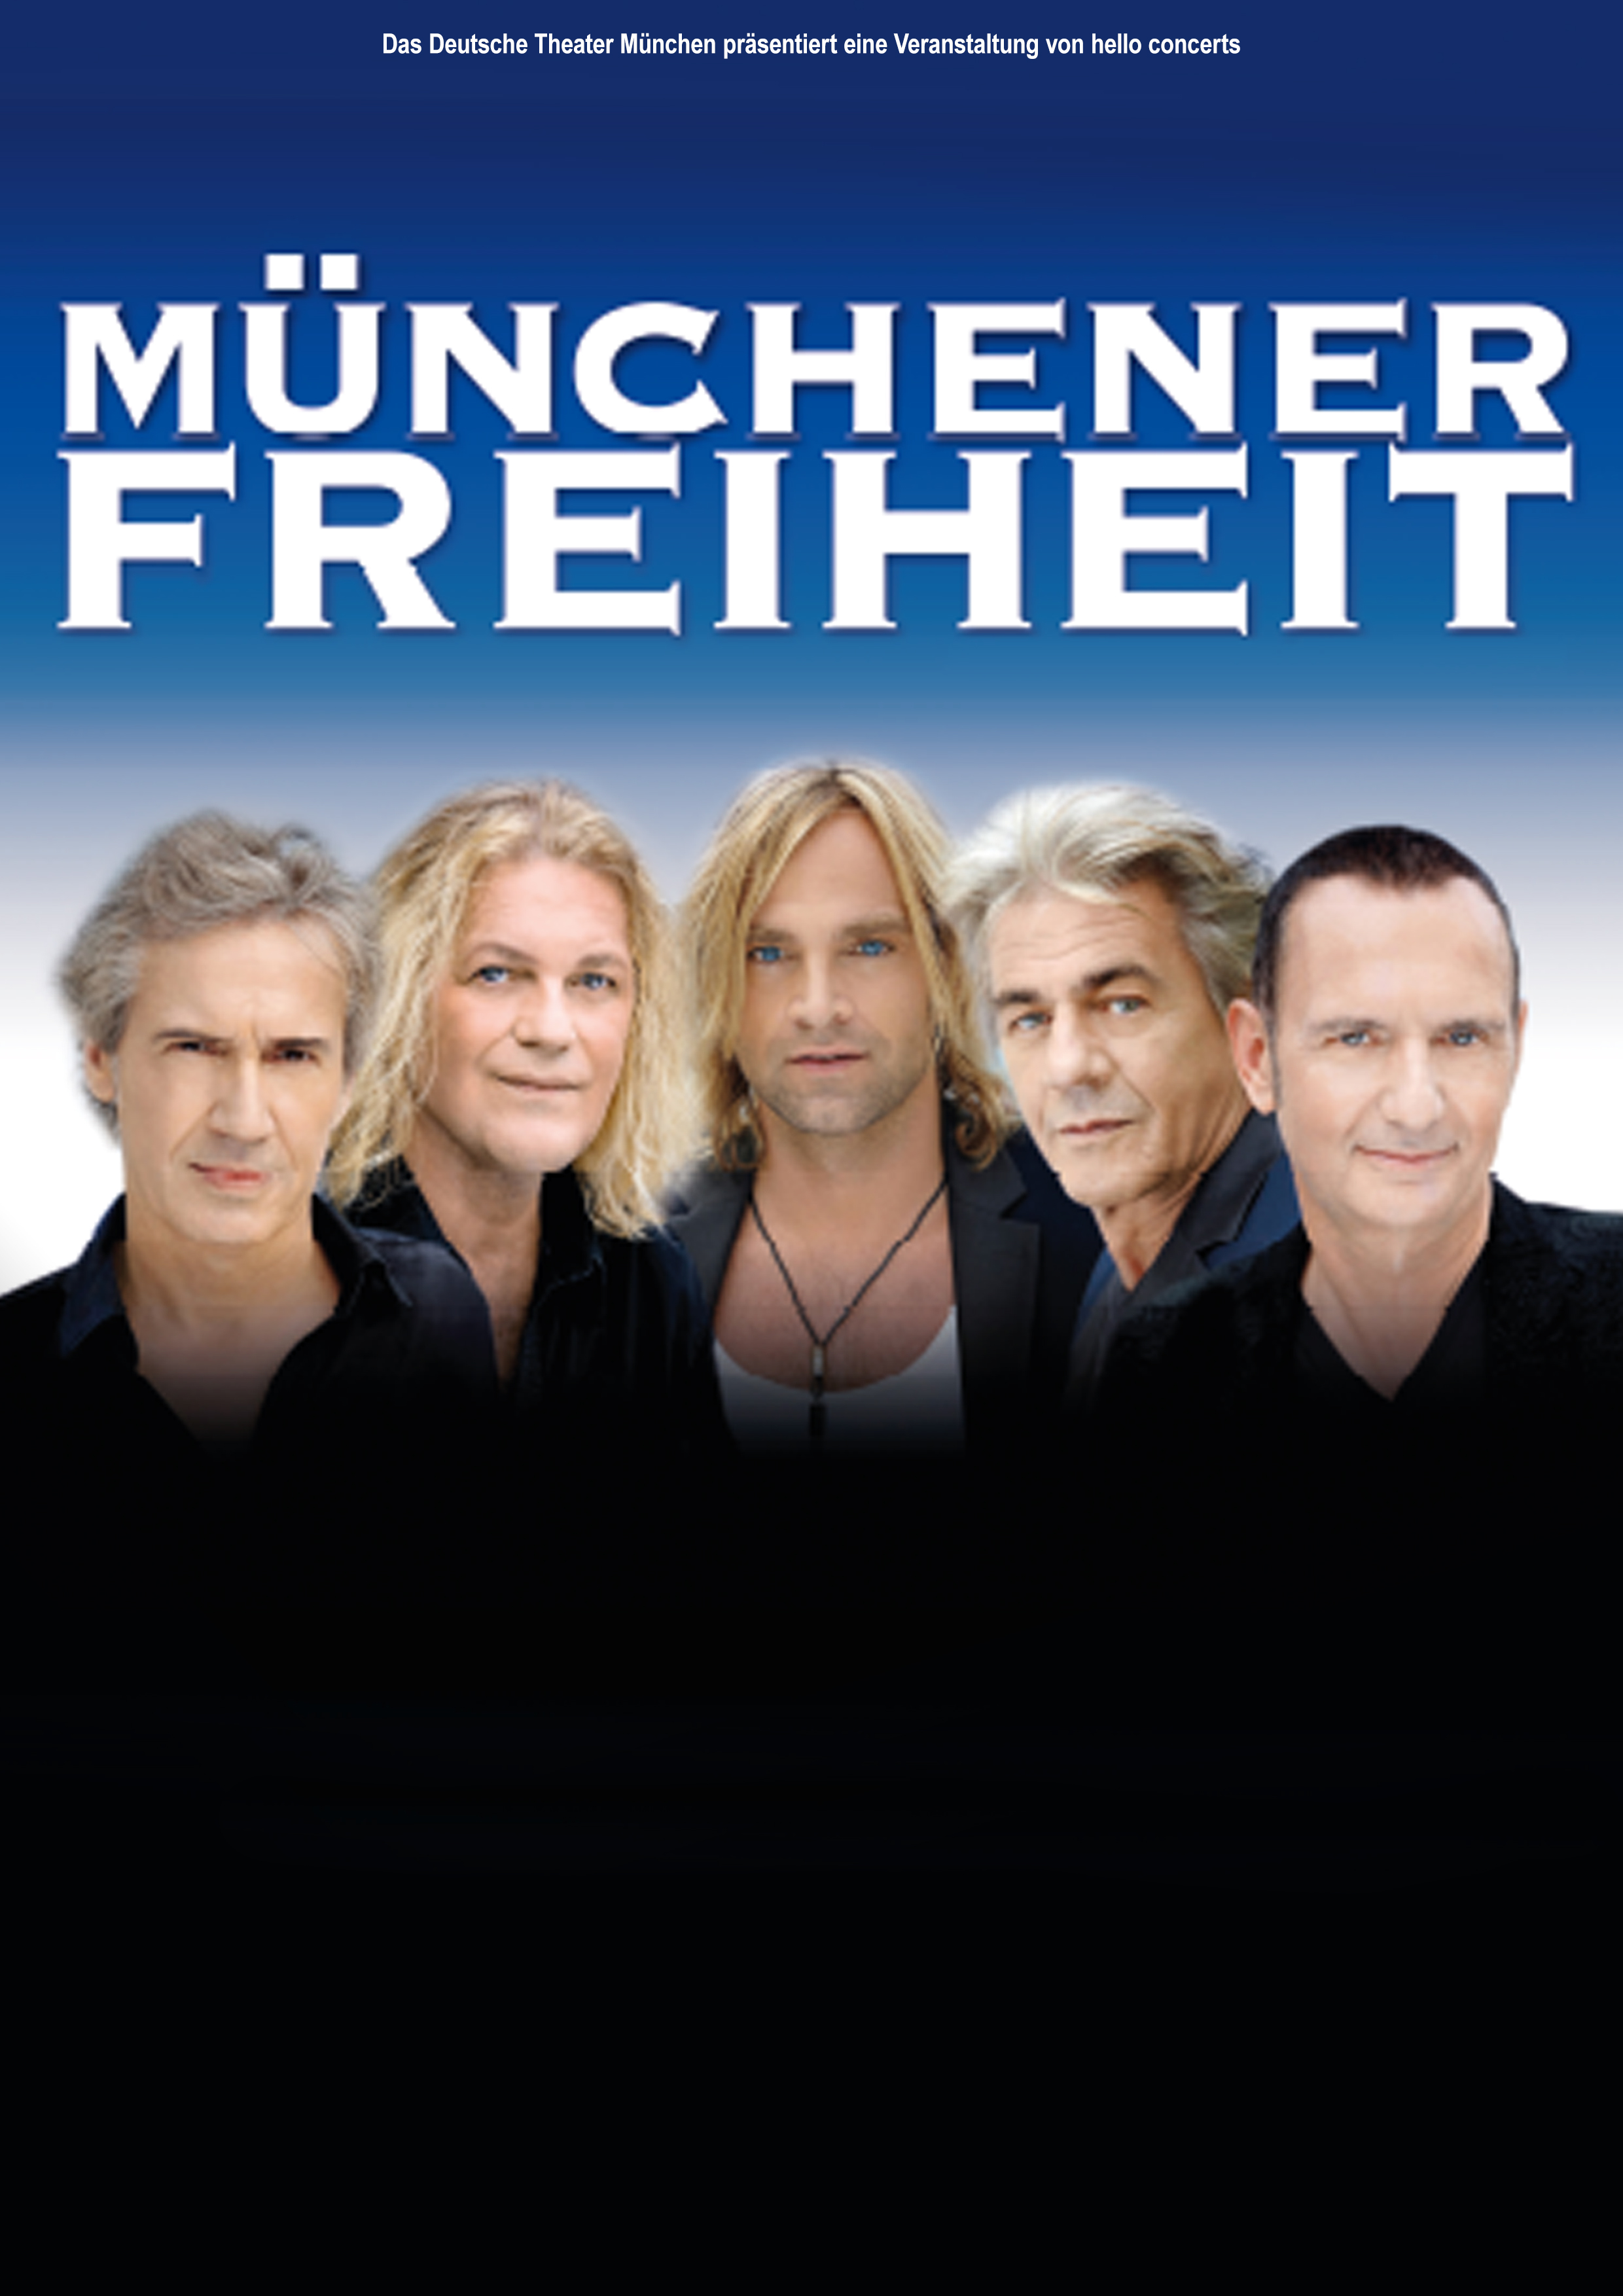 Veranstaltung im Deutschen Theater München